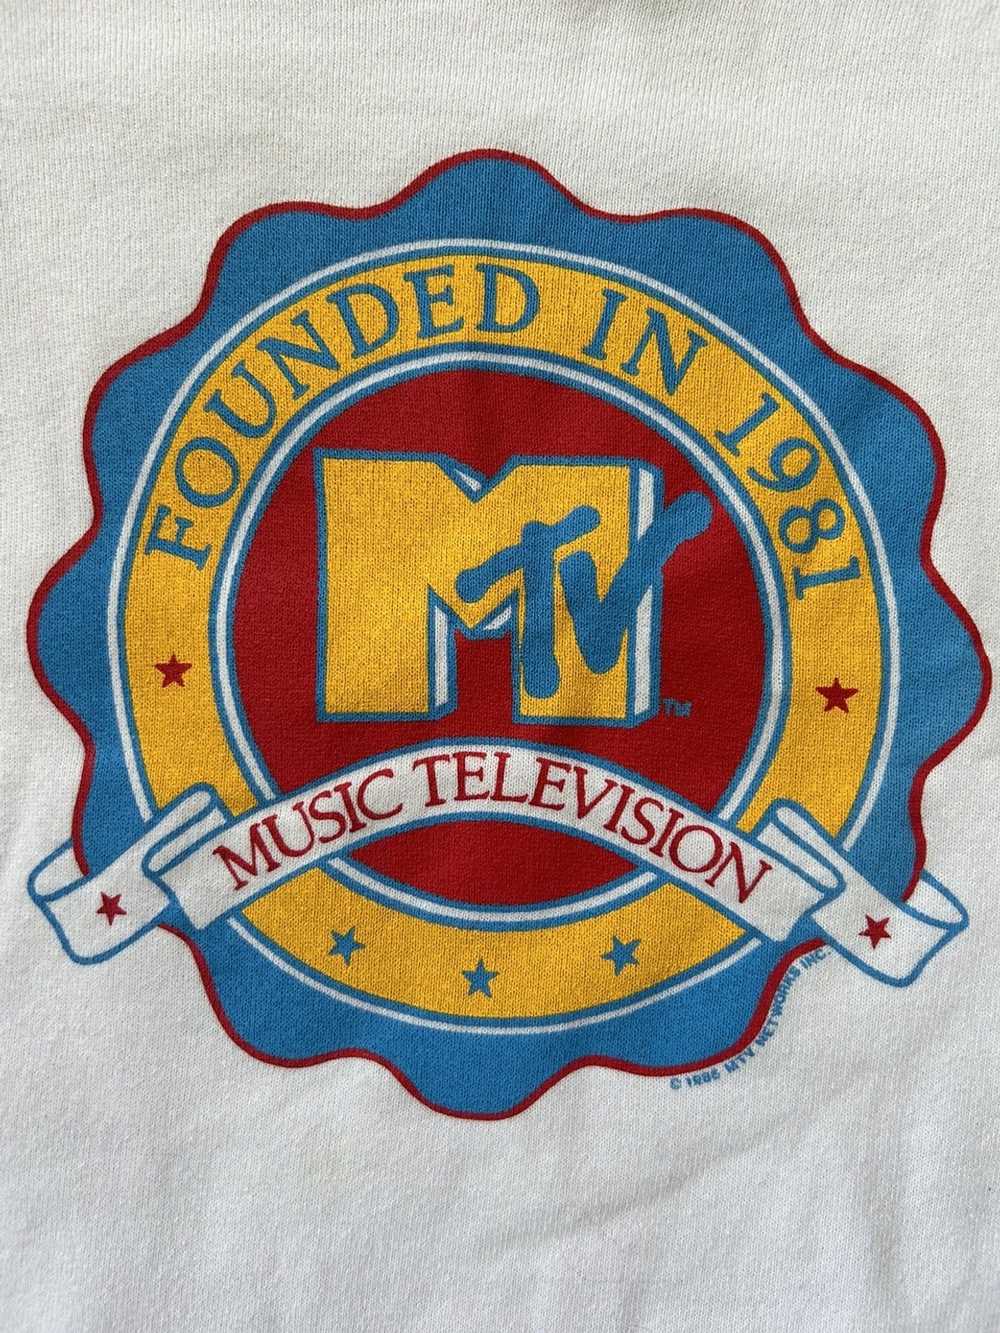 Vintage 1986 MTV Sweatshirt - image 2